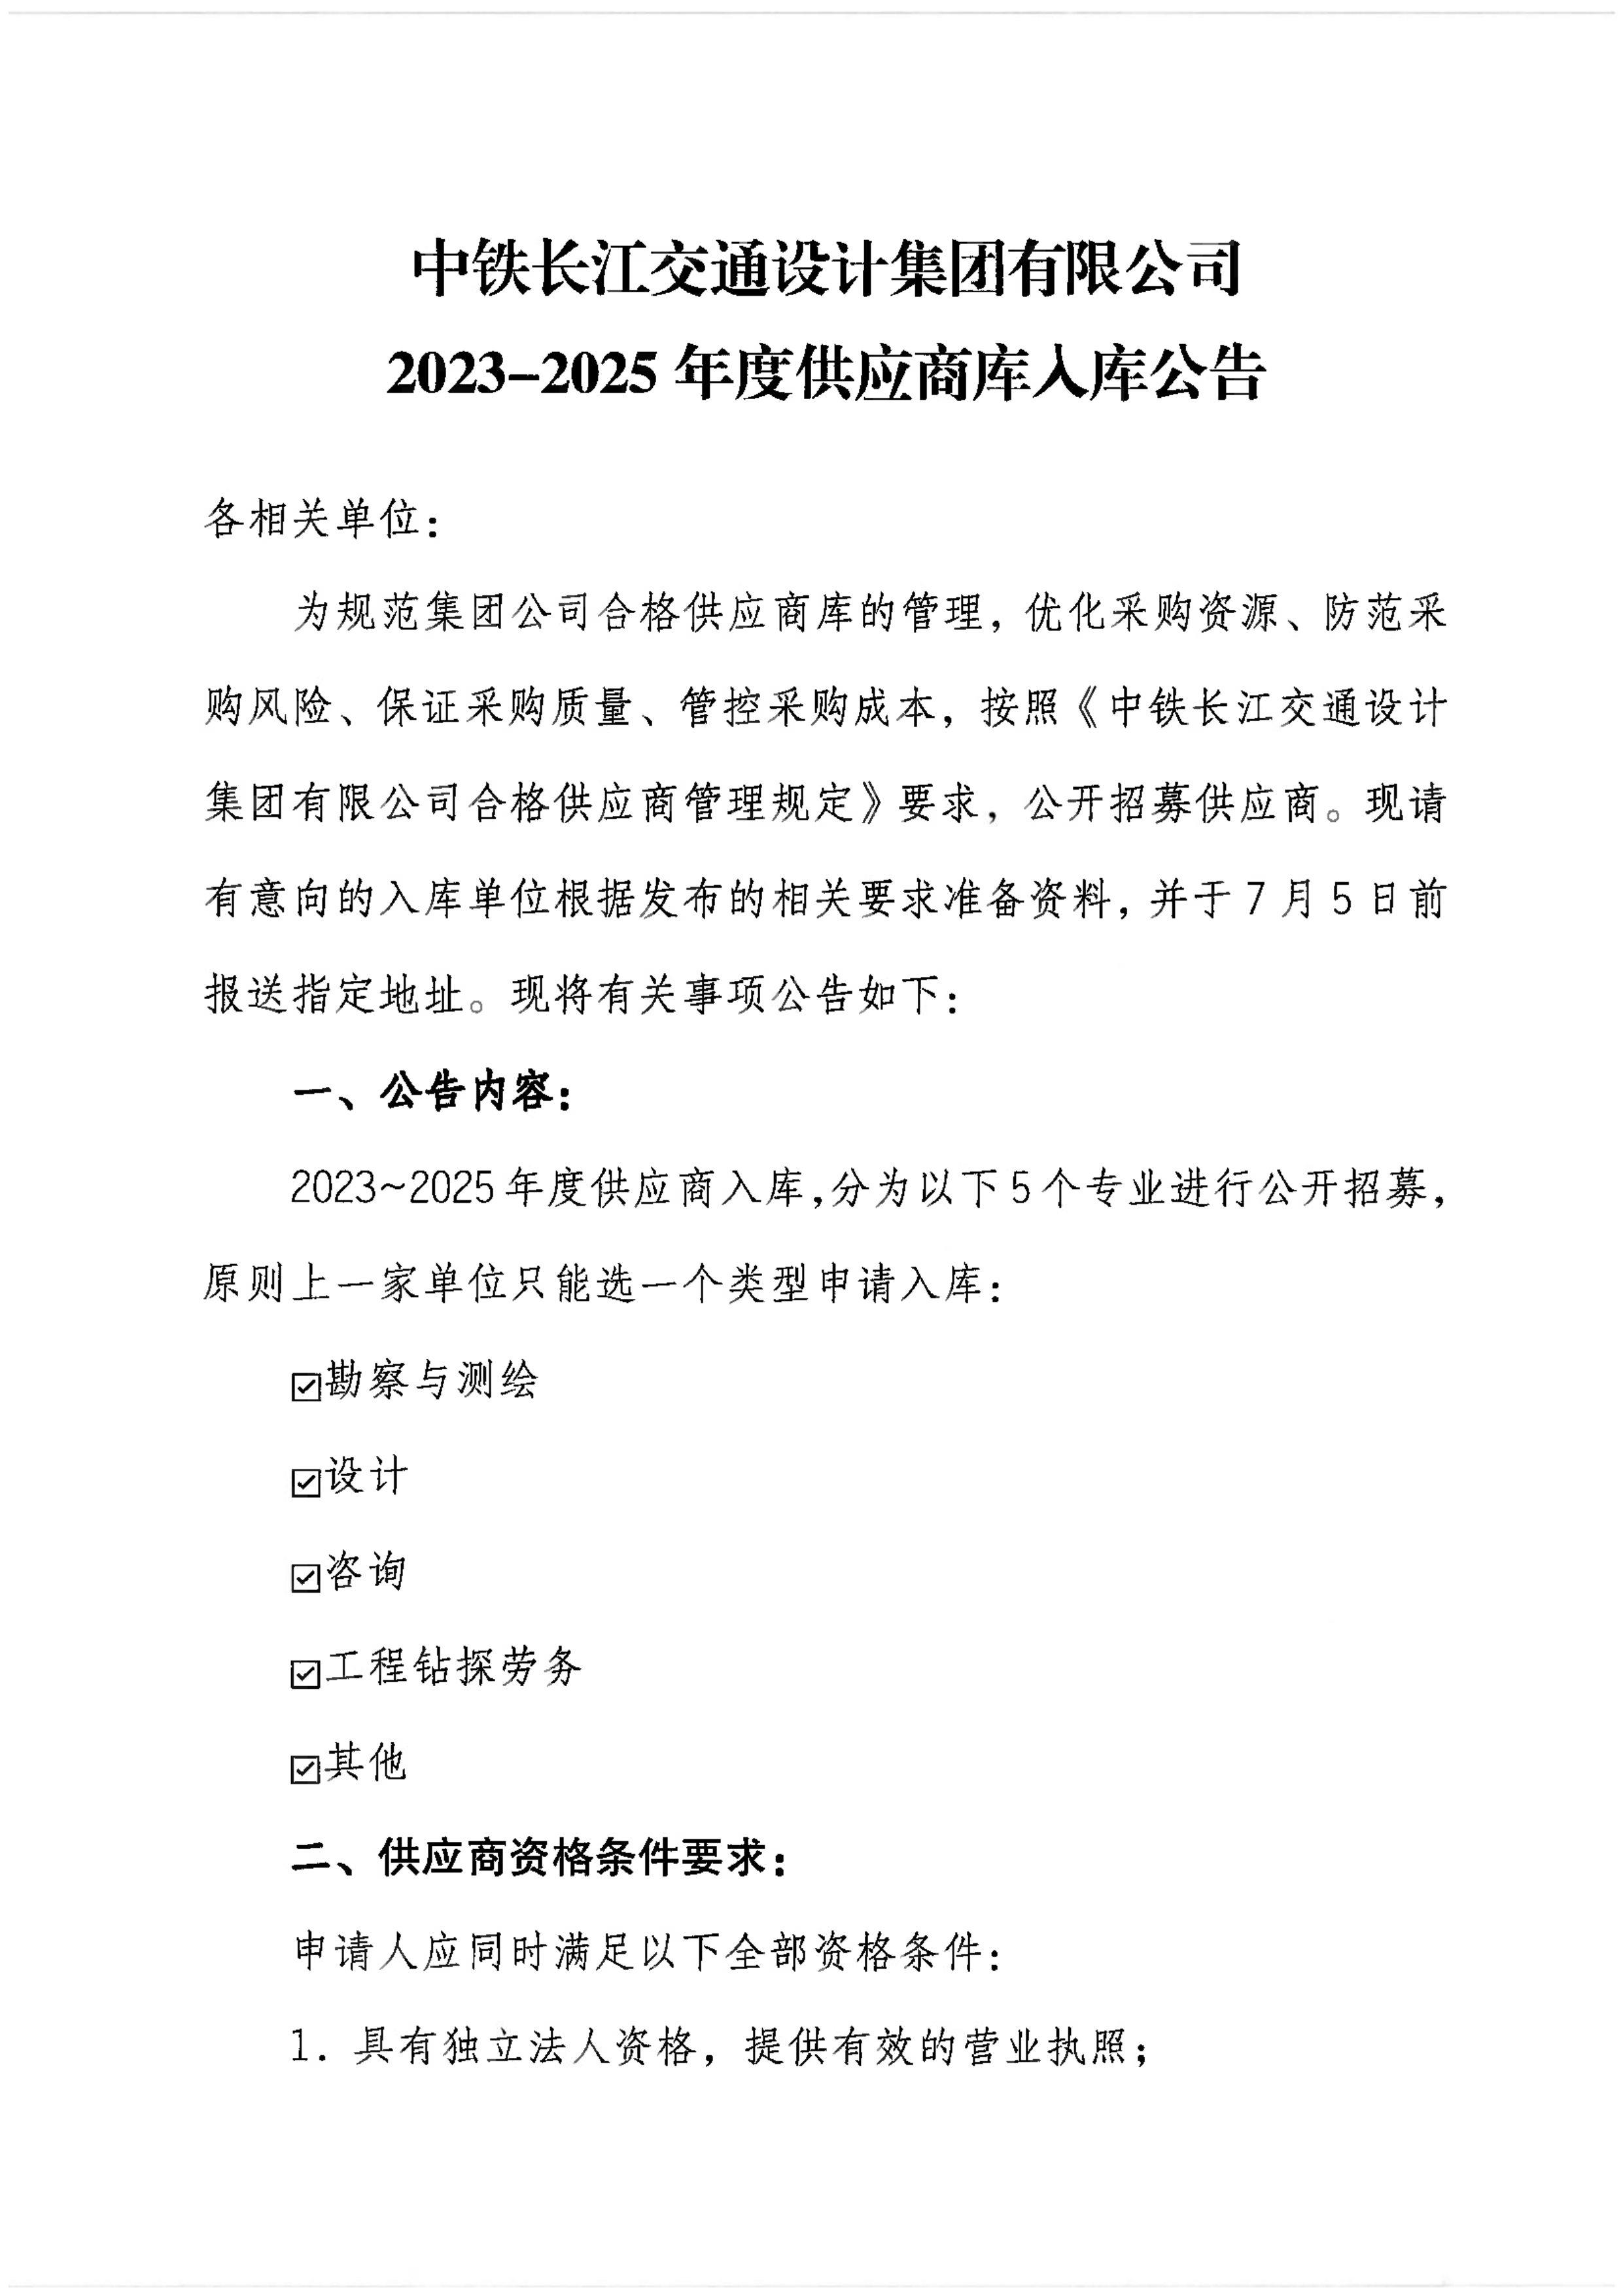 中铁长江交通设计集团有限公司关于供应商2023年-2025年入库公告_page-0001